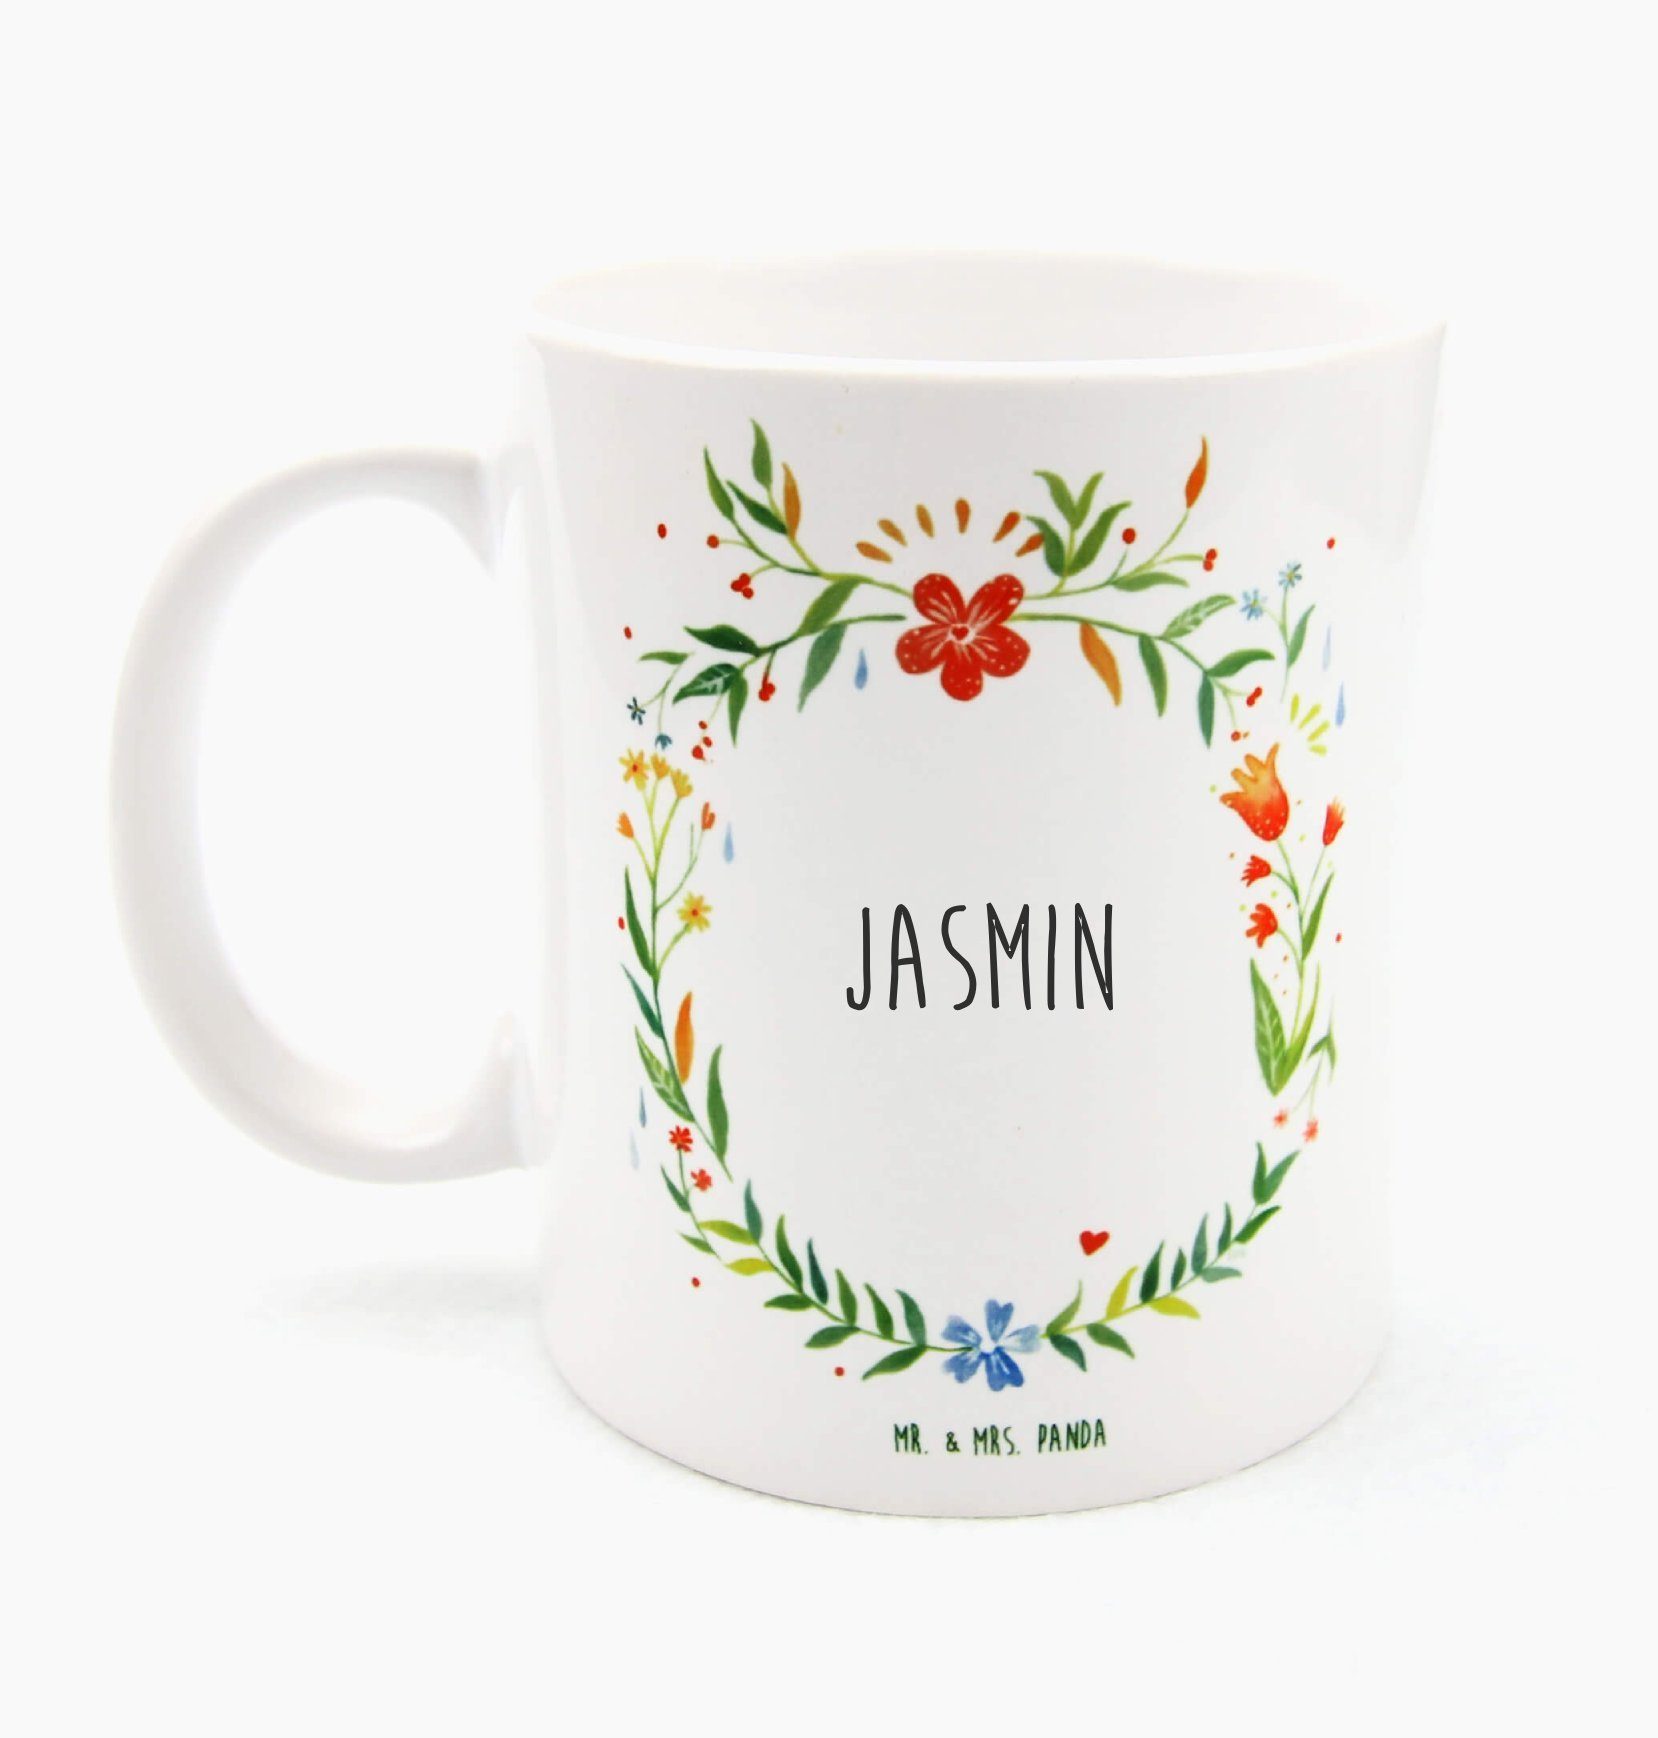 Mr. & Mrs. Panda Tasse Jasmin - Geschenk, Tasse Motive, Tasse Sprüche, Kaffeebecher, Geschen, Keramik